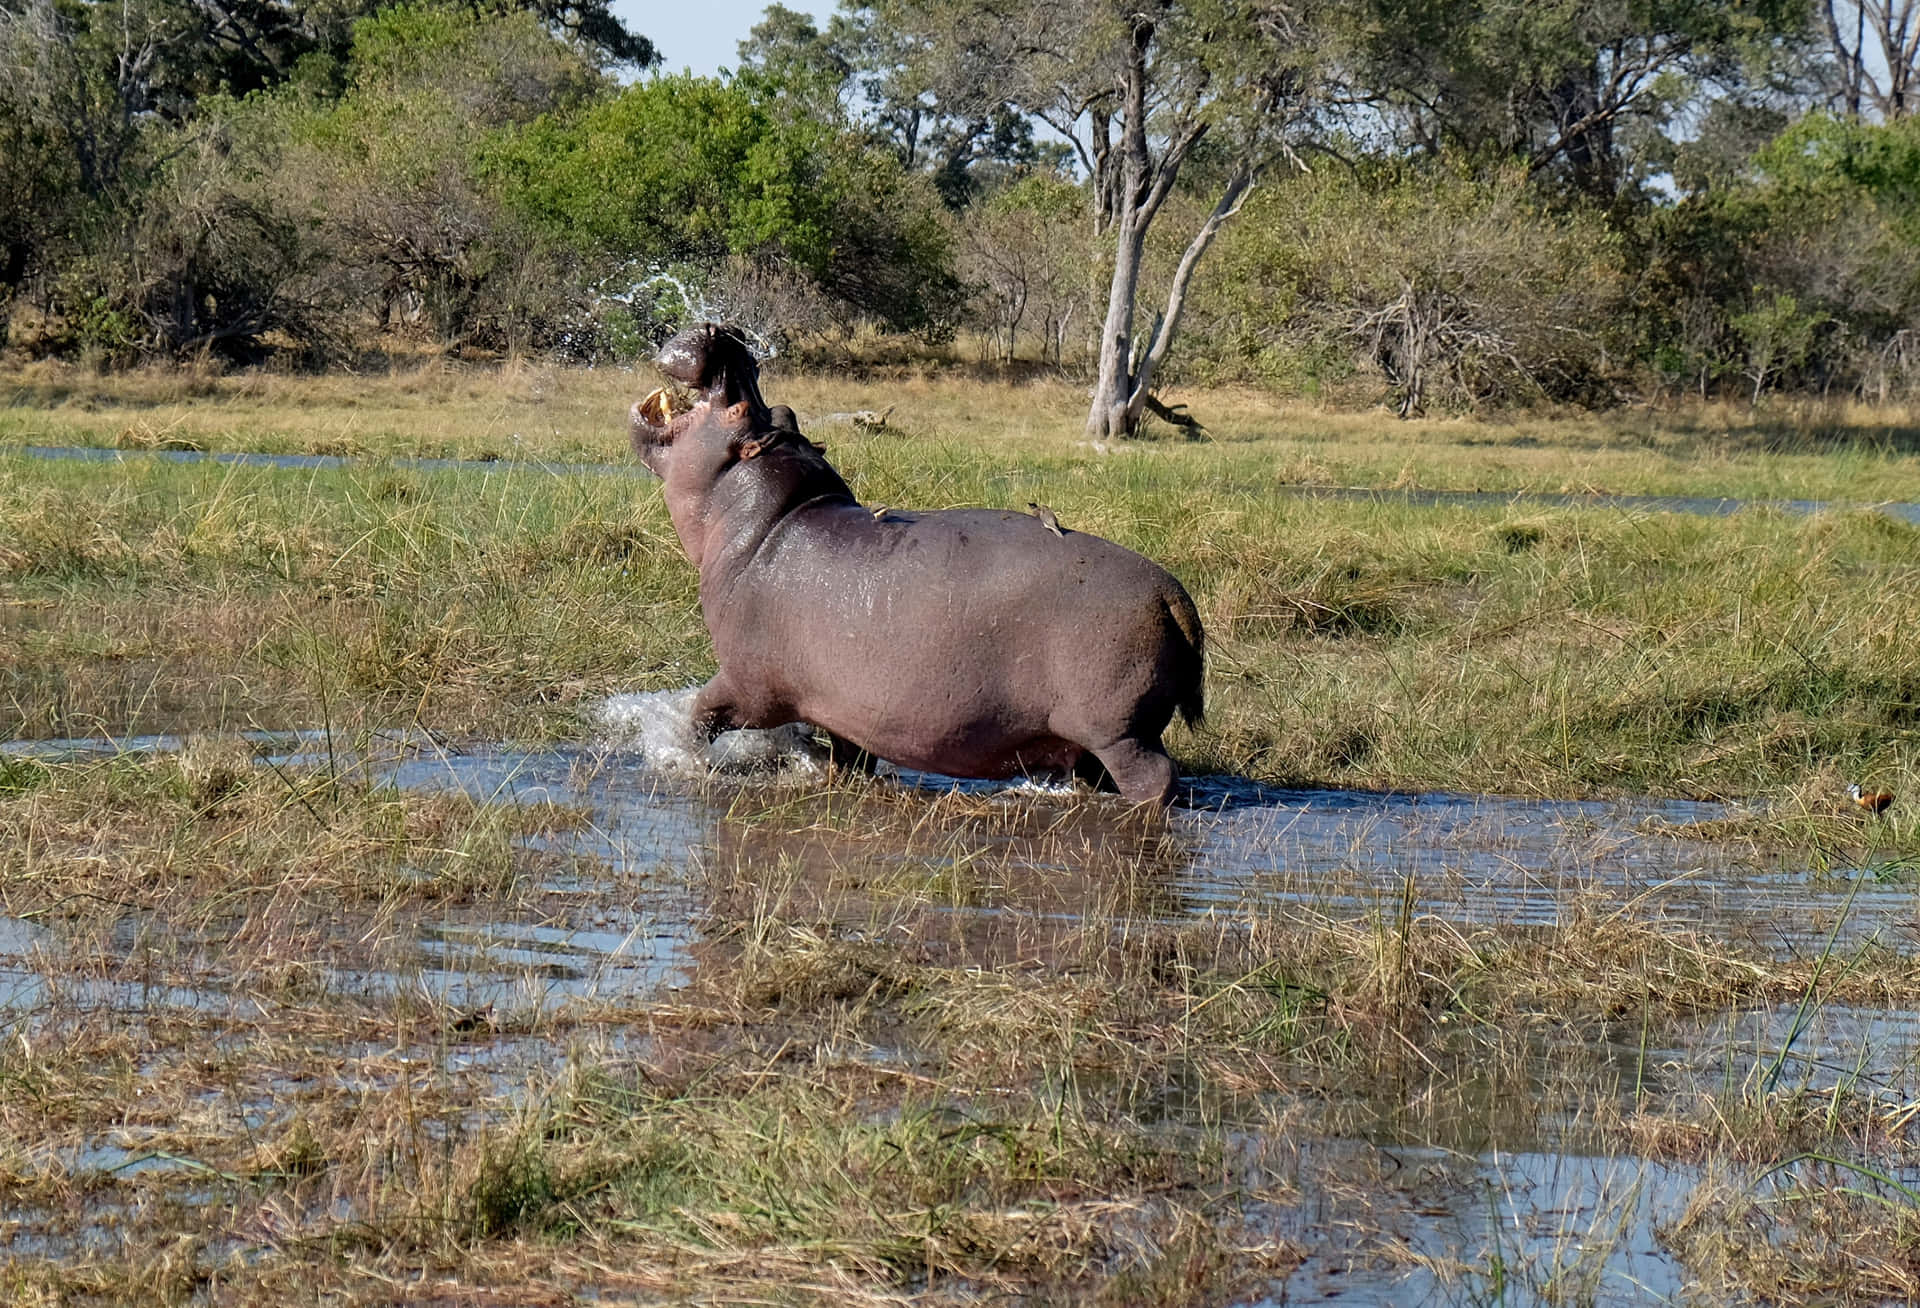 Imagende Un Hipopótamo Corriendo En Agua Turbia.